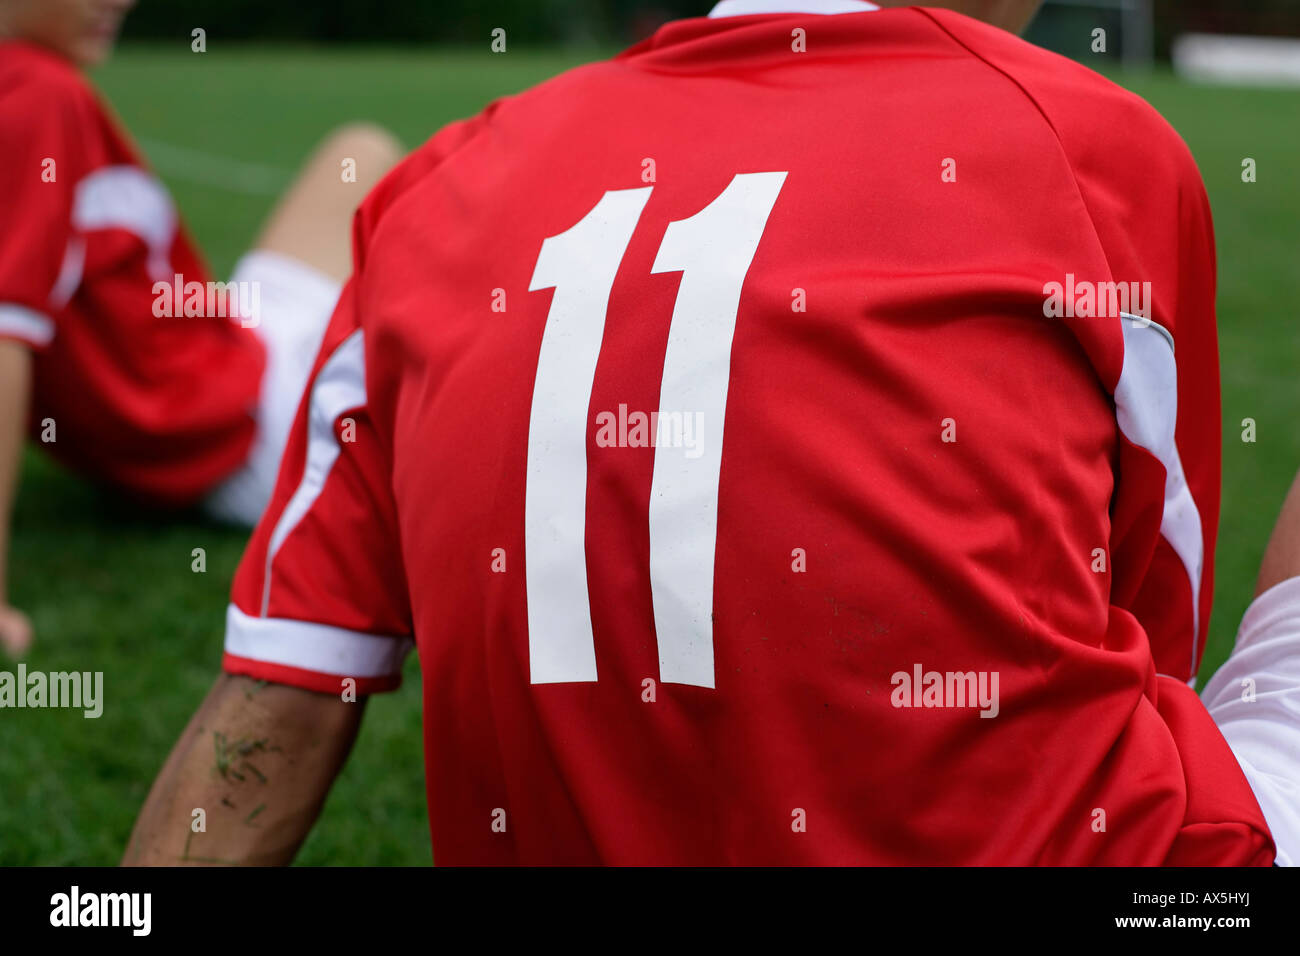 Fußball-Spieler trägt die Nummer 11 sitzen auf Rasen Stockfotografie - Alamy